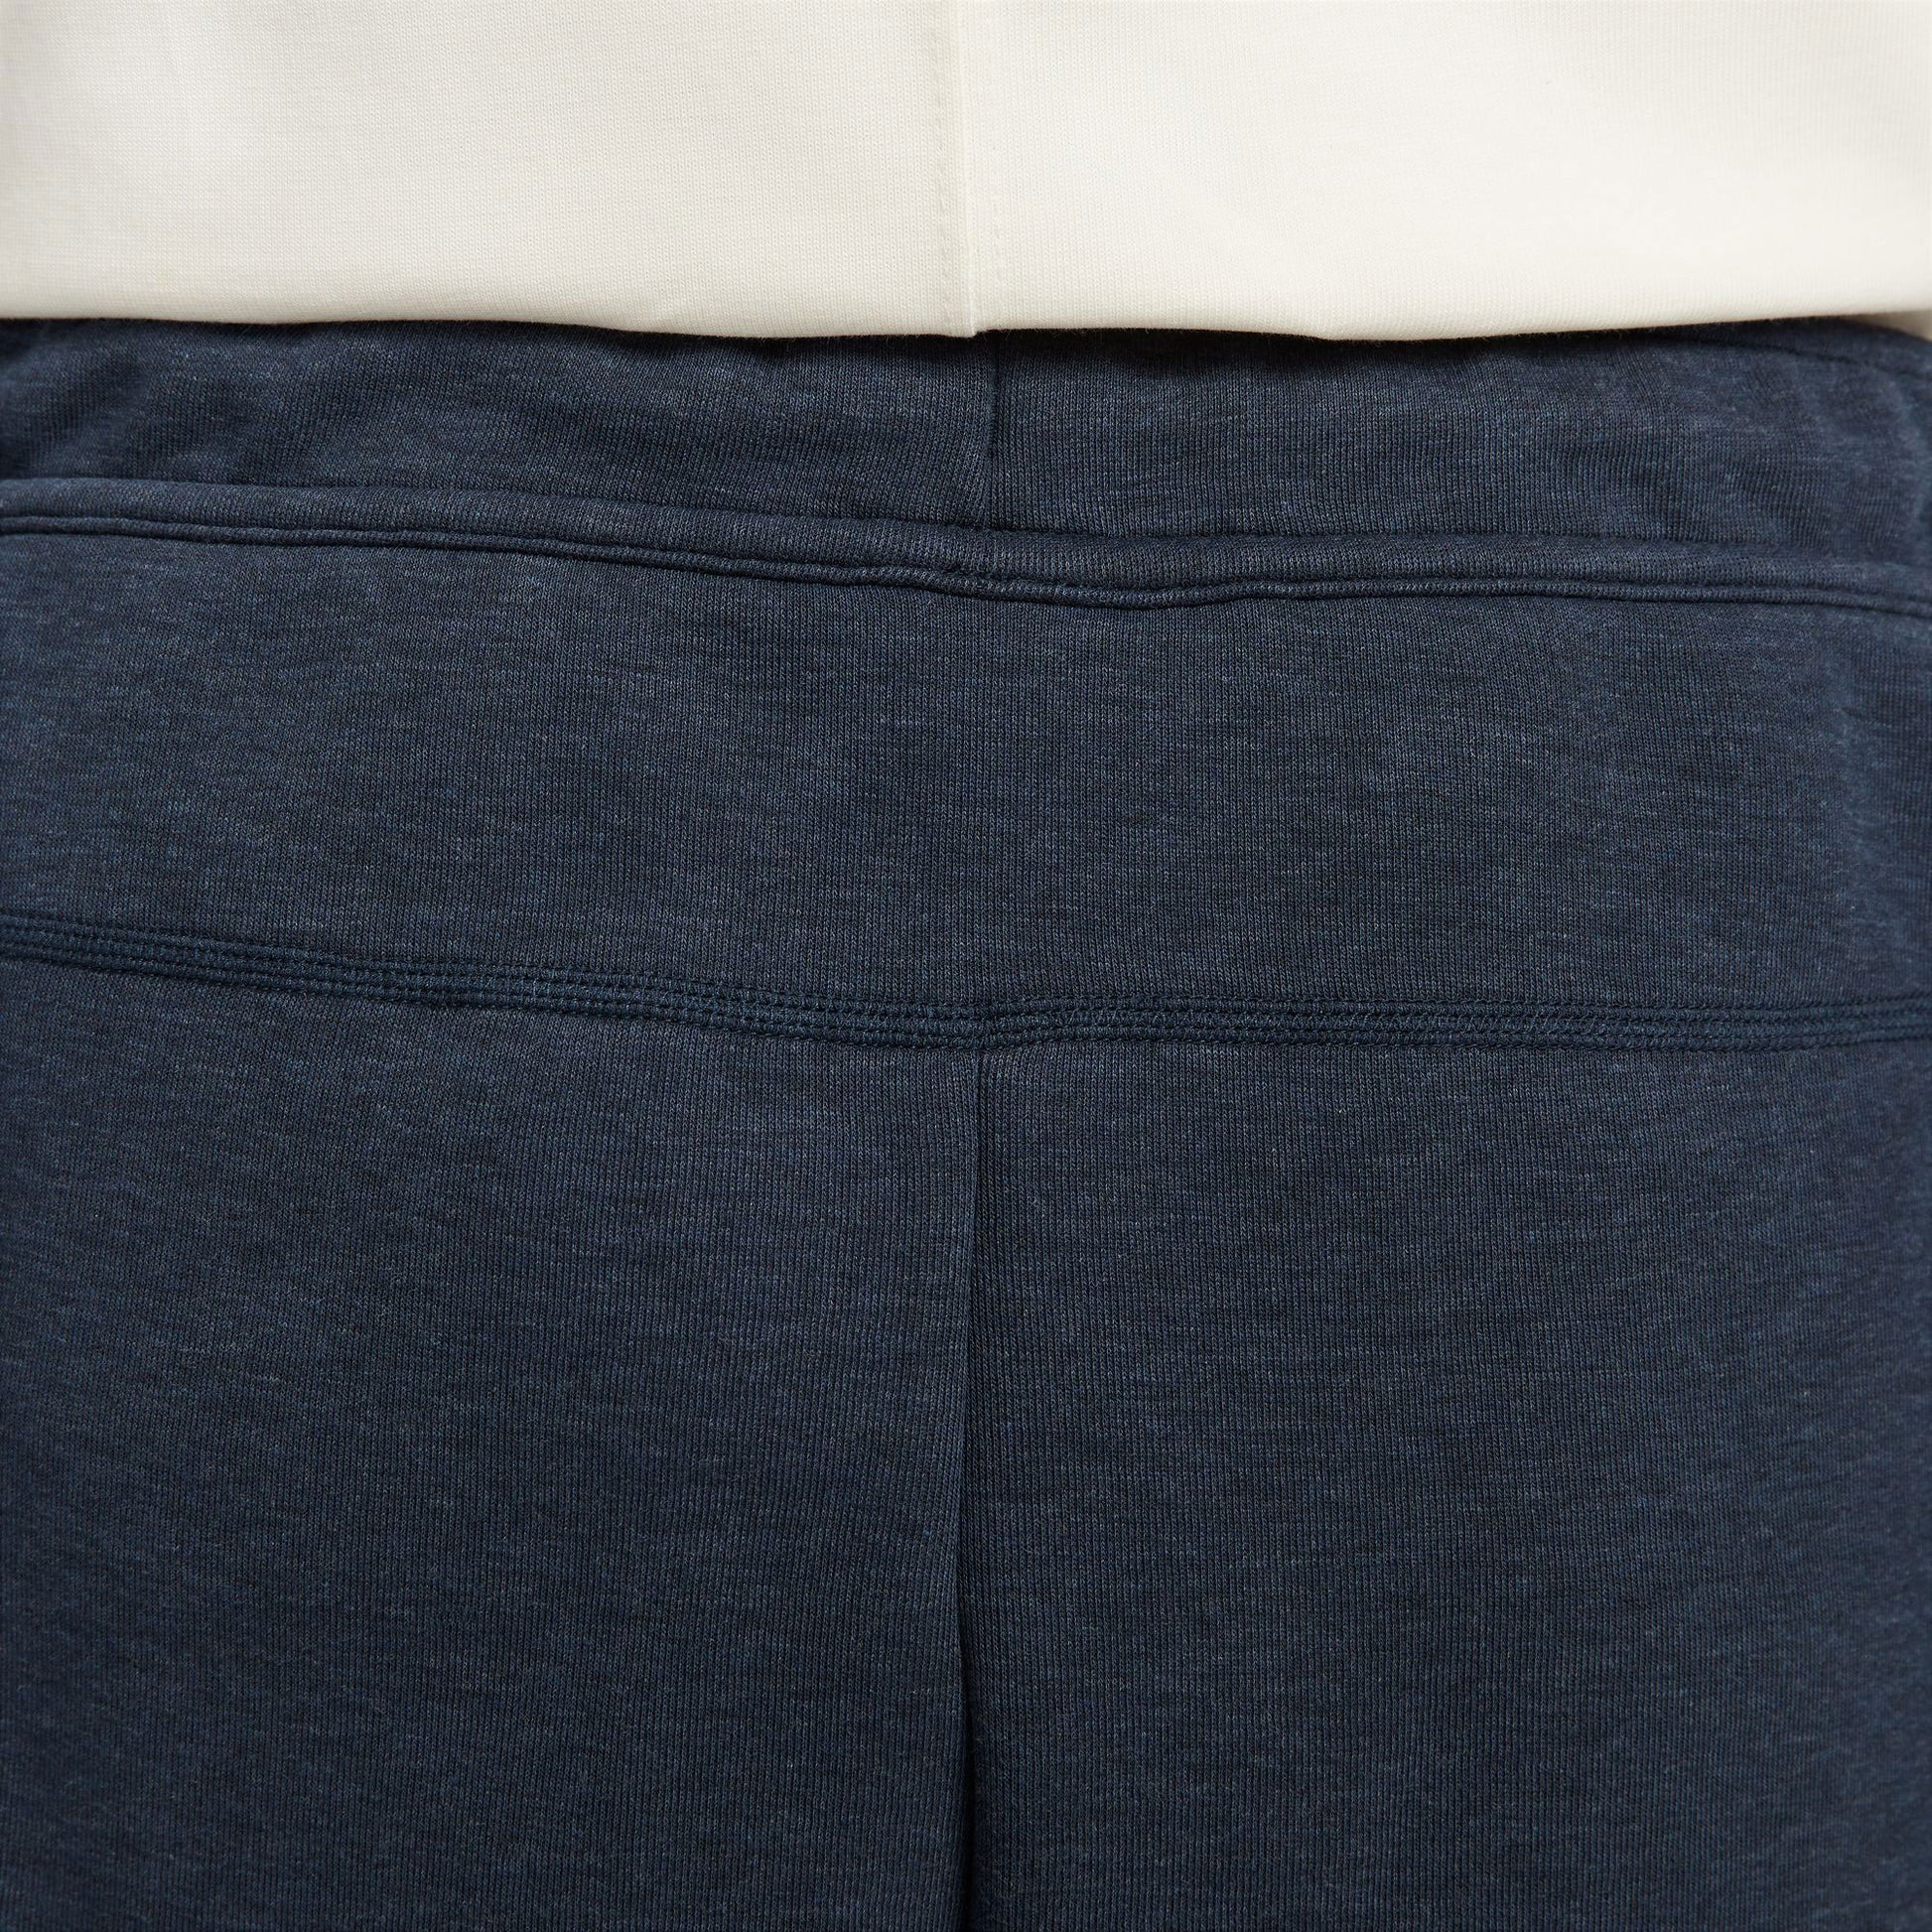 Nike Tech Fleece Men's Pants Dark Blue (8)